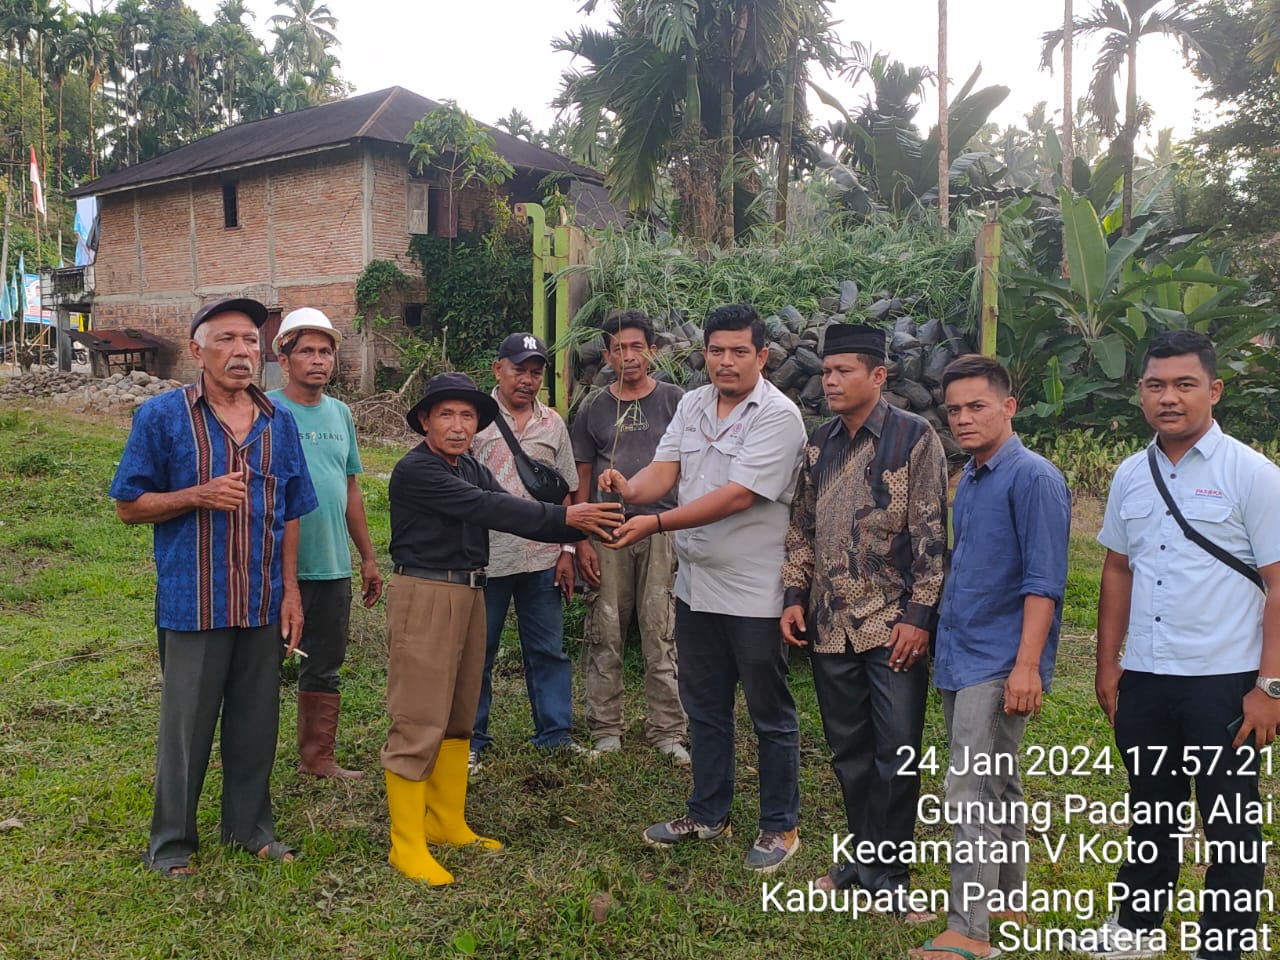 PT Semen Padang terus menunjukkan komitmennya untuk mengembangkan Energi Baru Terbarukan (EBT) dengan menanam pohon kaliandra merah di Nagari Gunuang Padang Alai, Kecamatan V Koto Timur, Padang Pariaman